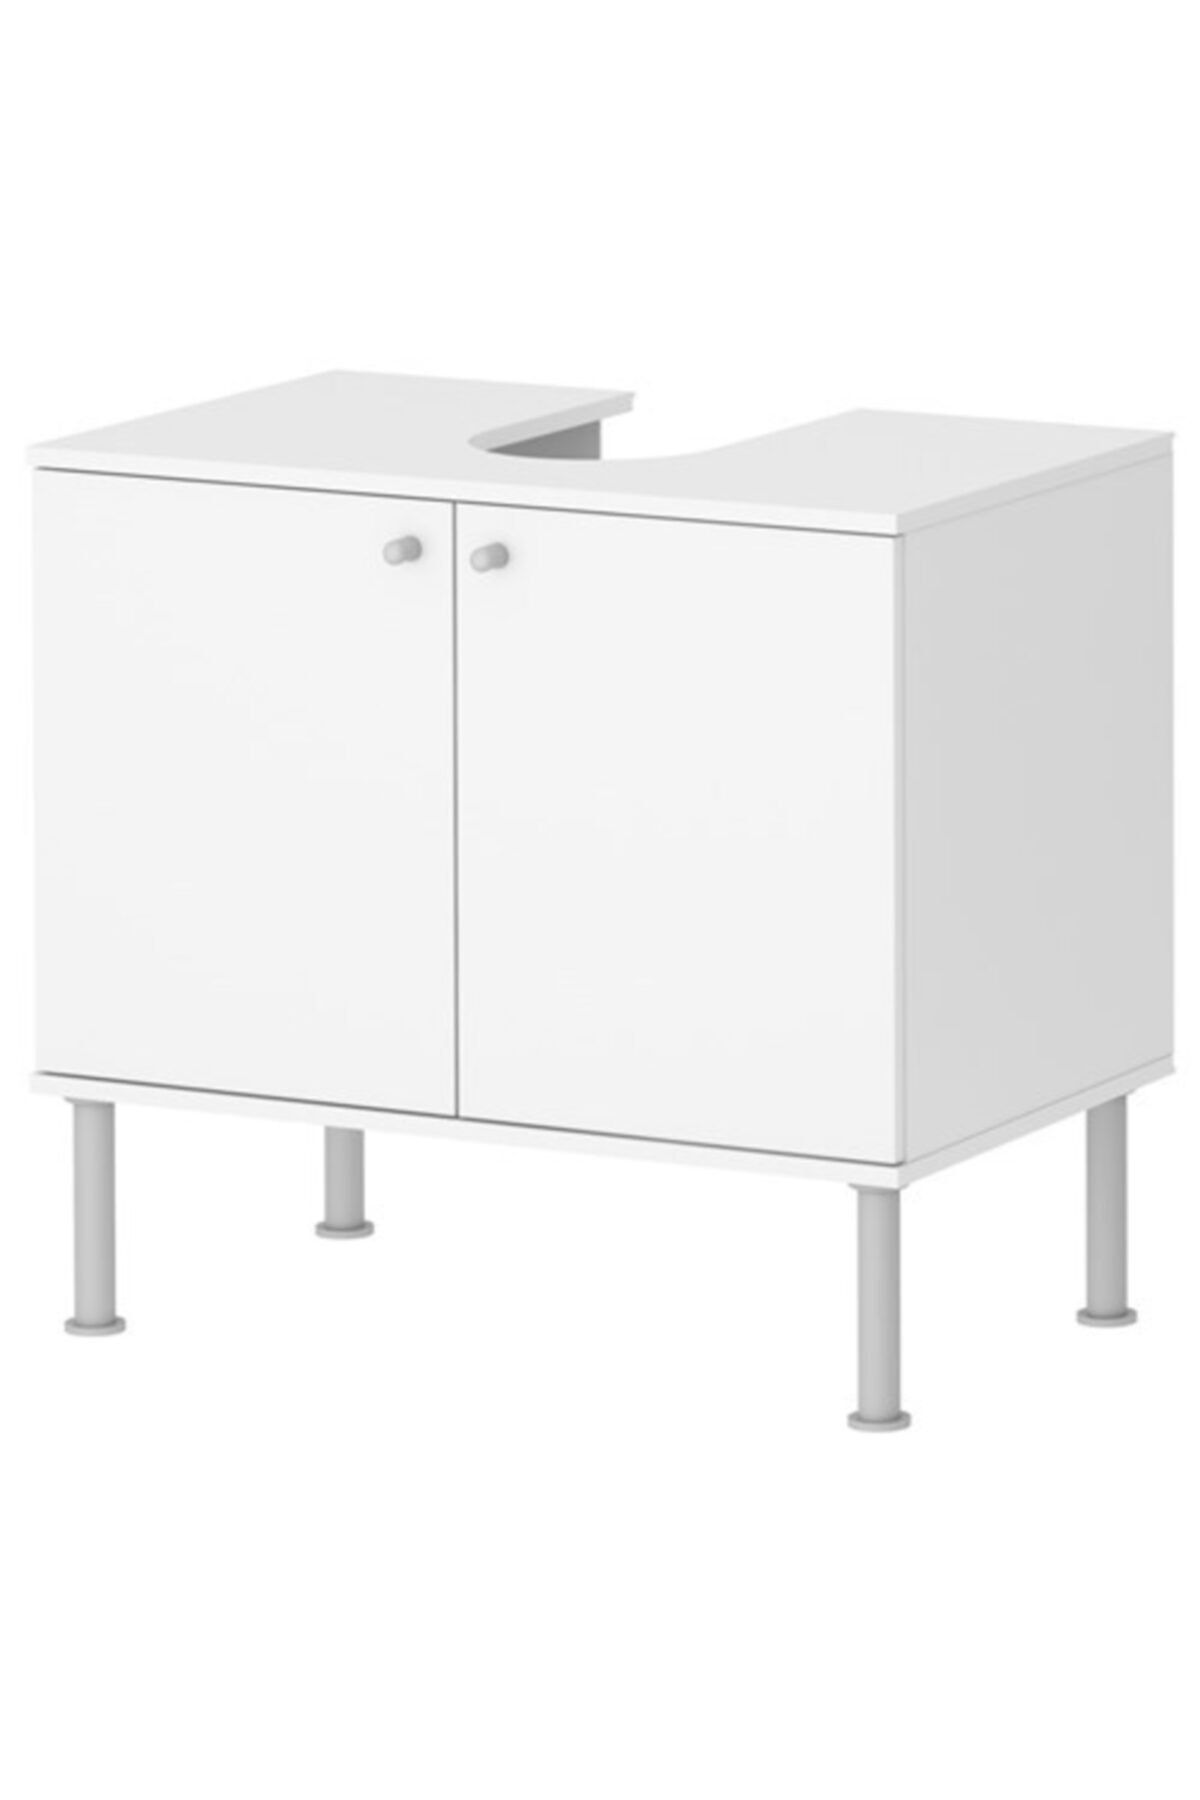 IKEA Fullen Lavabo Dolabı Beyaz, 60x35x55 Cm